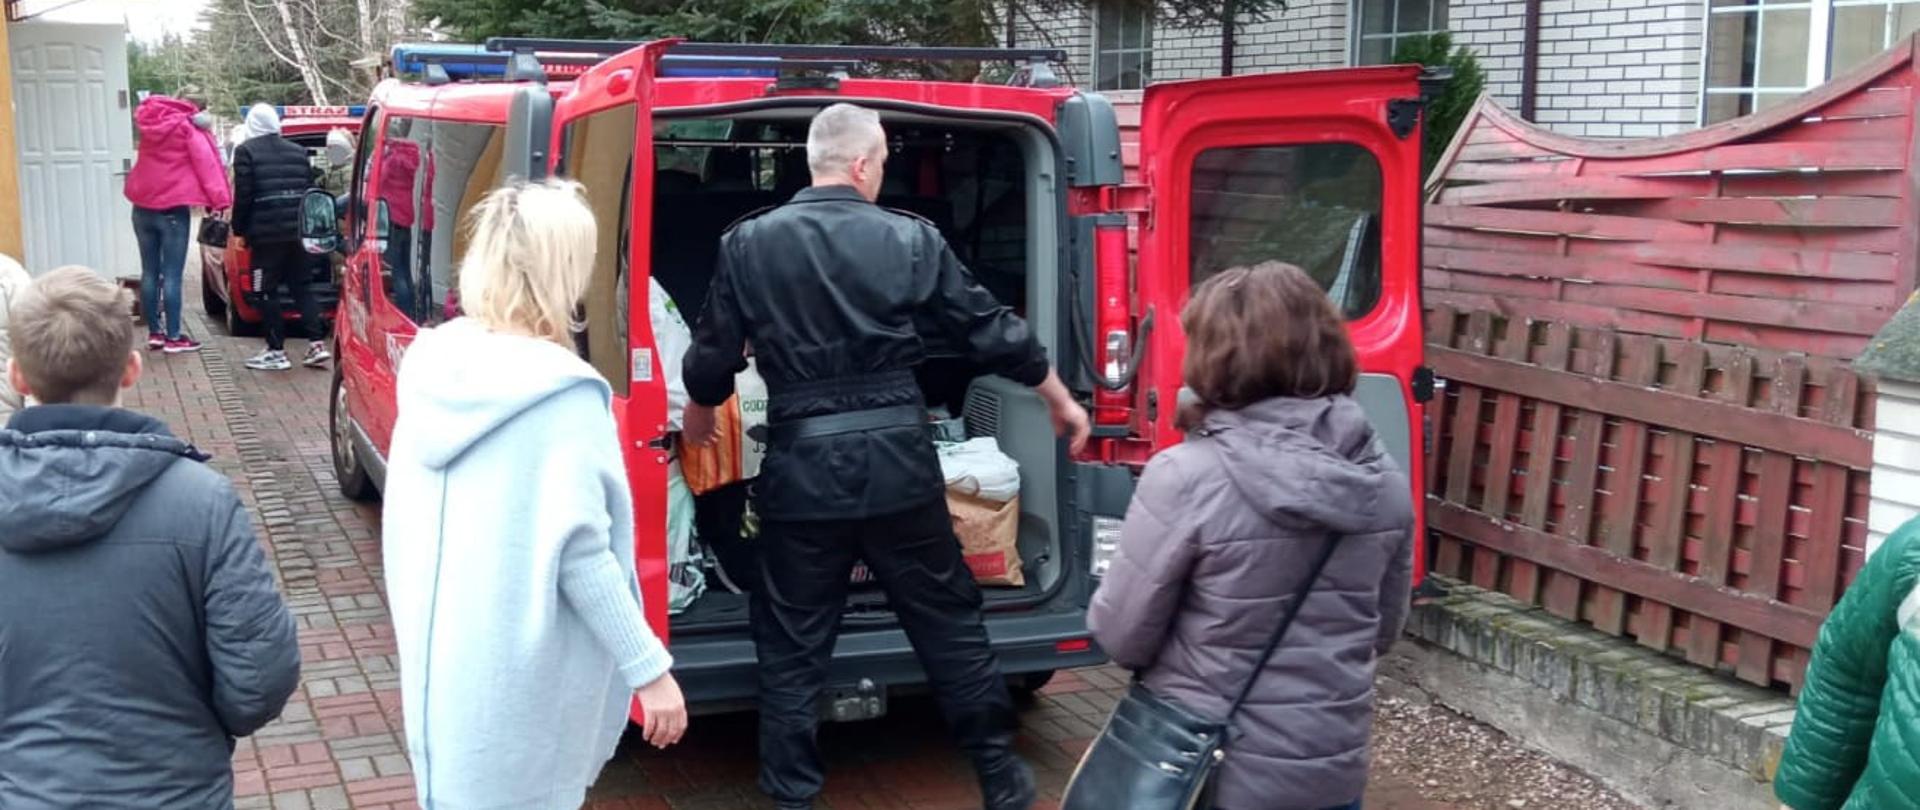 Zdjęcie przedstawia strażaków Komendy Powiatowej Państwowej Straży Pożarnej w Gołdapi, którzy we współpracy z przedstawicielami Starostwa Powiatowego w Gołdapi, udzielają pomocy w transporcie uchodźcom z Ukrainy (w tym pakowanie bagażów) przy użyciu pojazdów pożarniczych